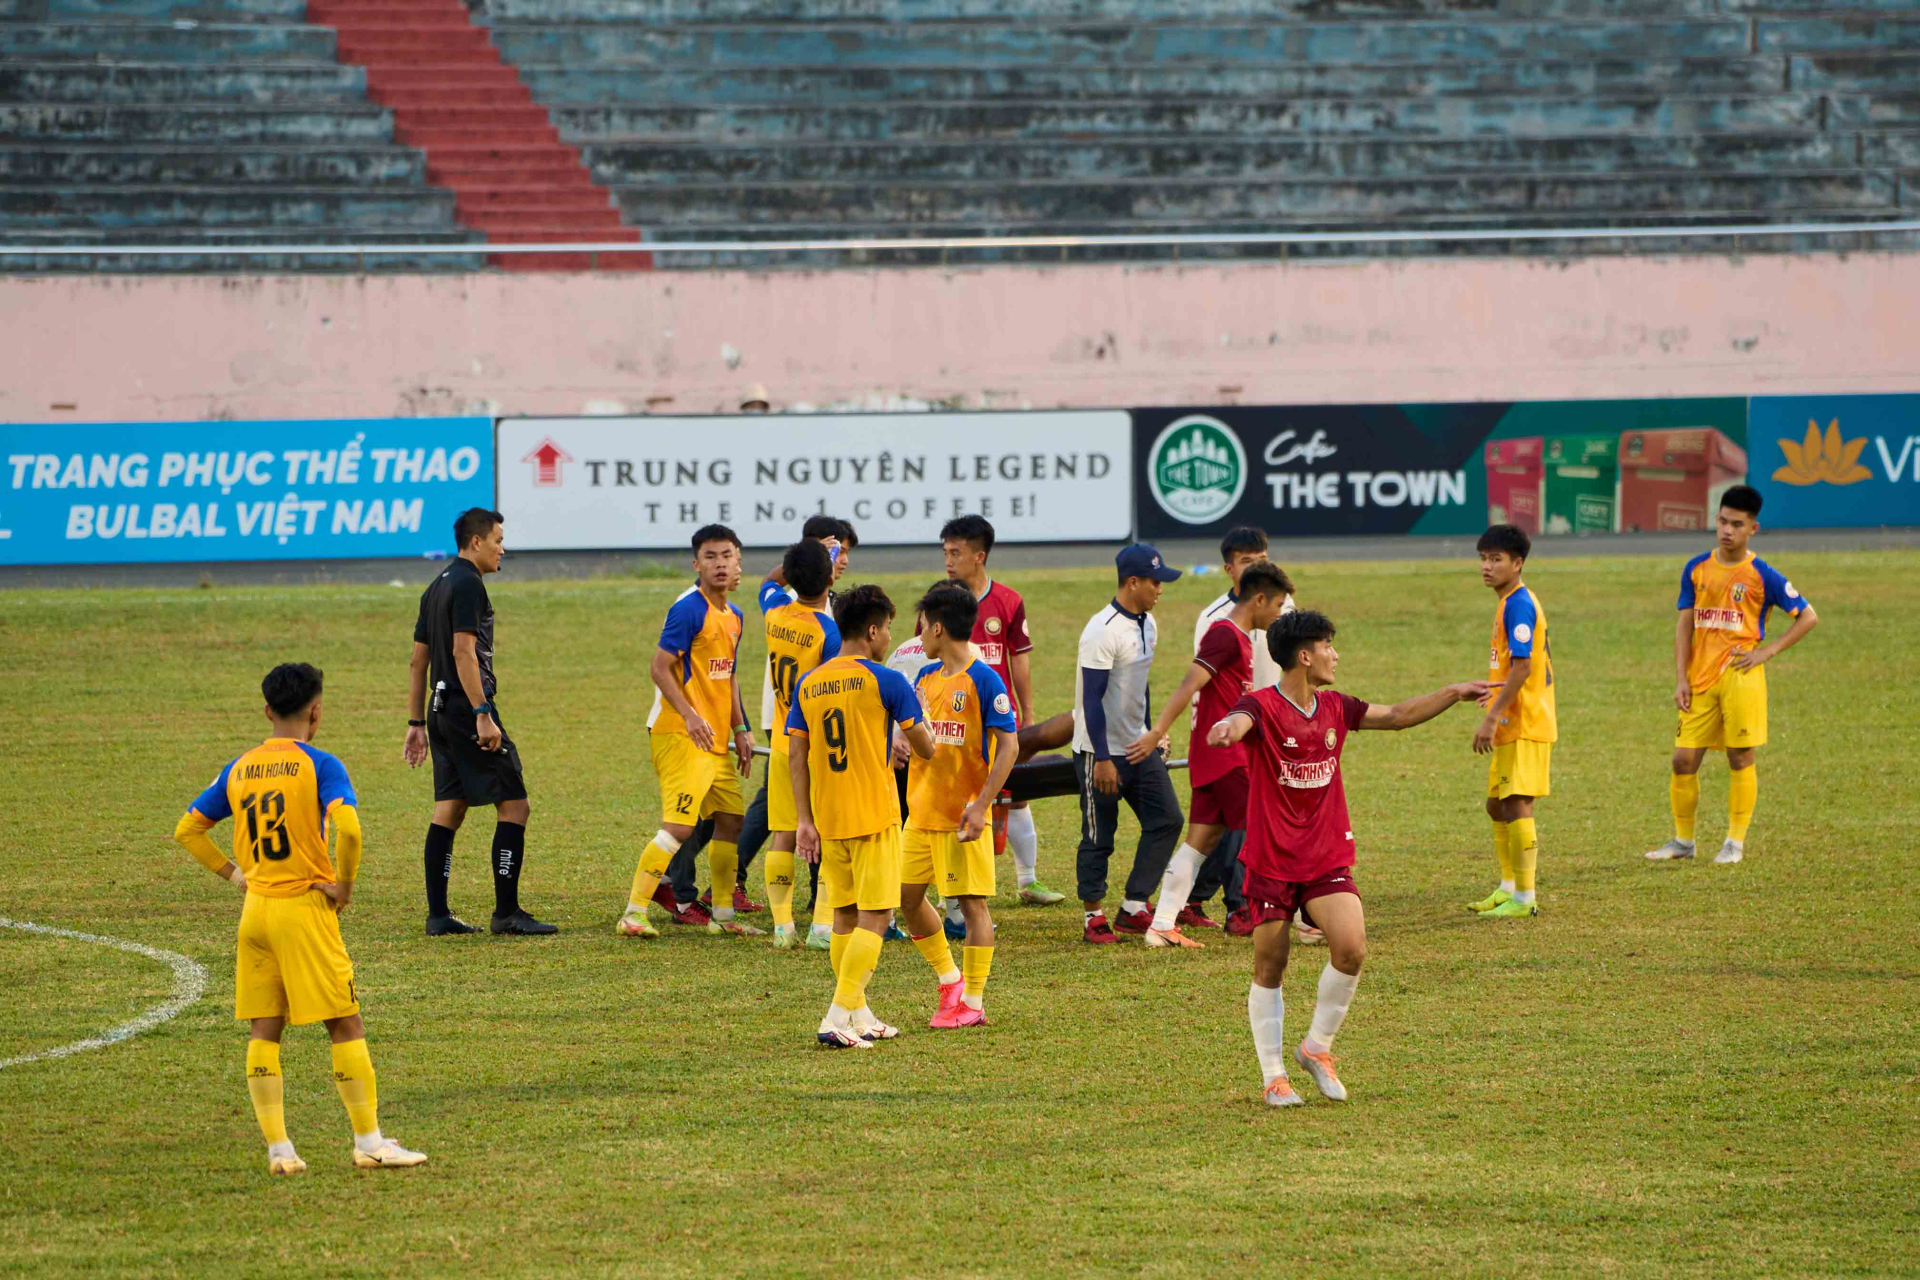 hai đội bước vào trận Chung kết là U.19 Đông Á Thanh Hóa hay U.19 Sông Lam Nghệ An thì 12 đội có mặt tại VCK U.19 Quốc gia 2023 đều xứng đáng được vinh danh chức vô địch của chính mình vì những nỗ lực bỏ ra”. 